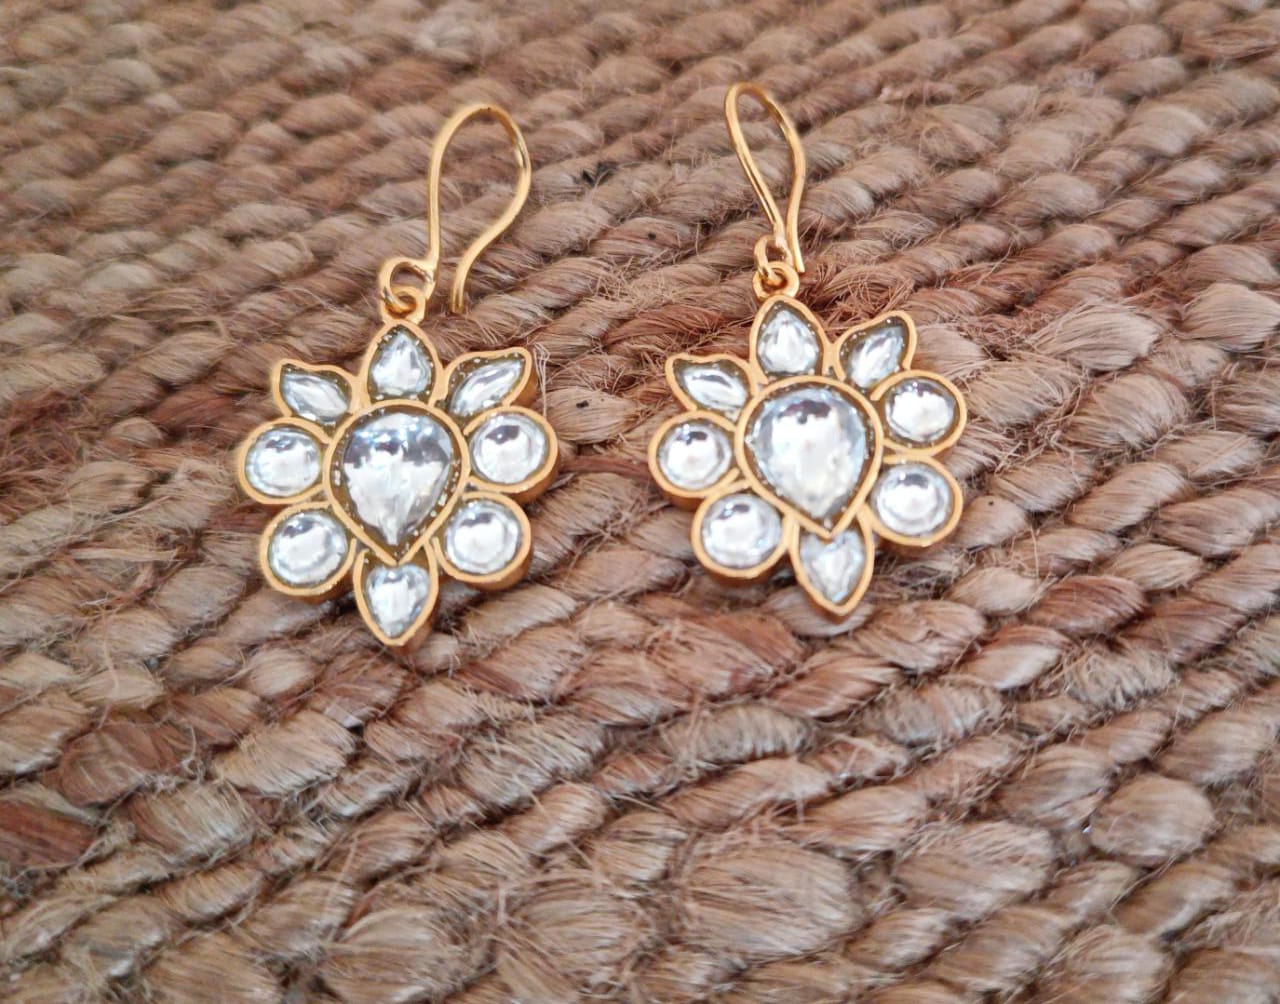 Jadau phool earrings

Billor Polki set in sterling silver 18 k gold plating